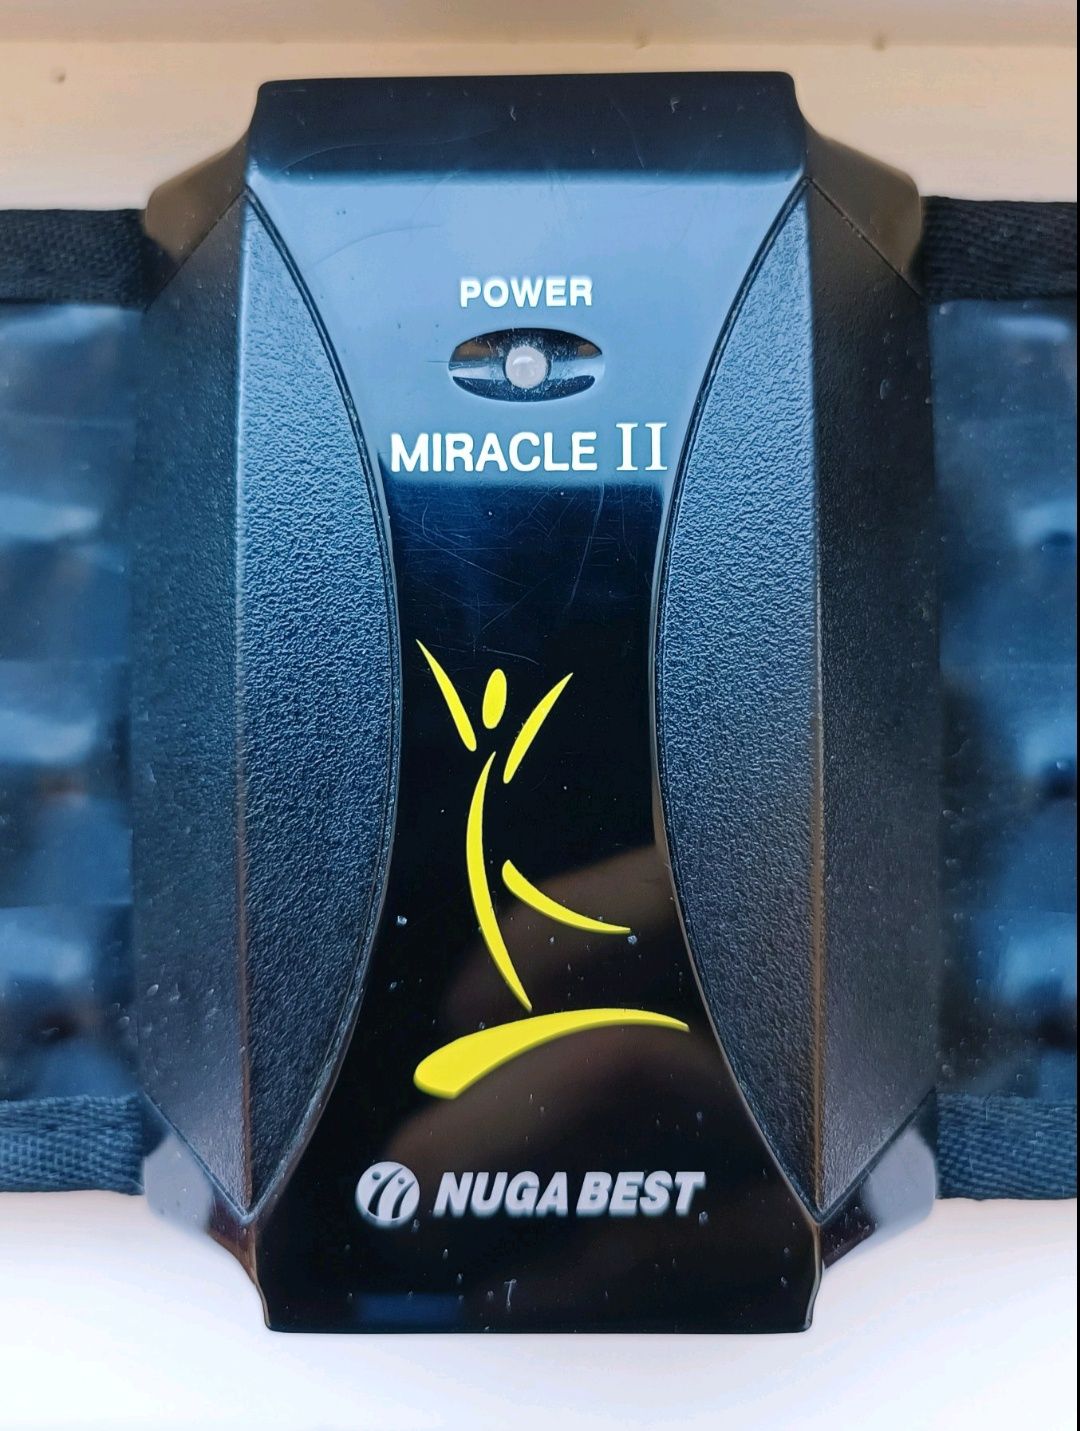 Турманієвий пояс Nuga Best Miracle 2 у чудовому стані